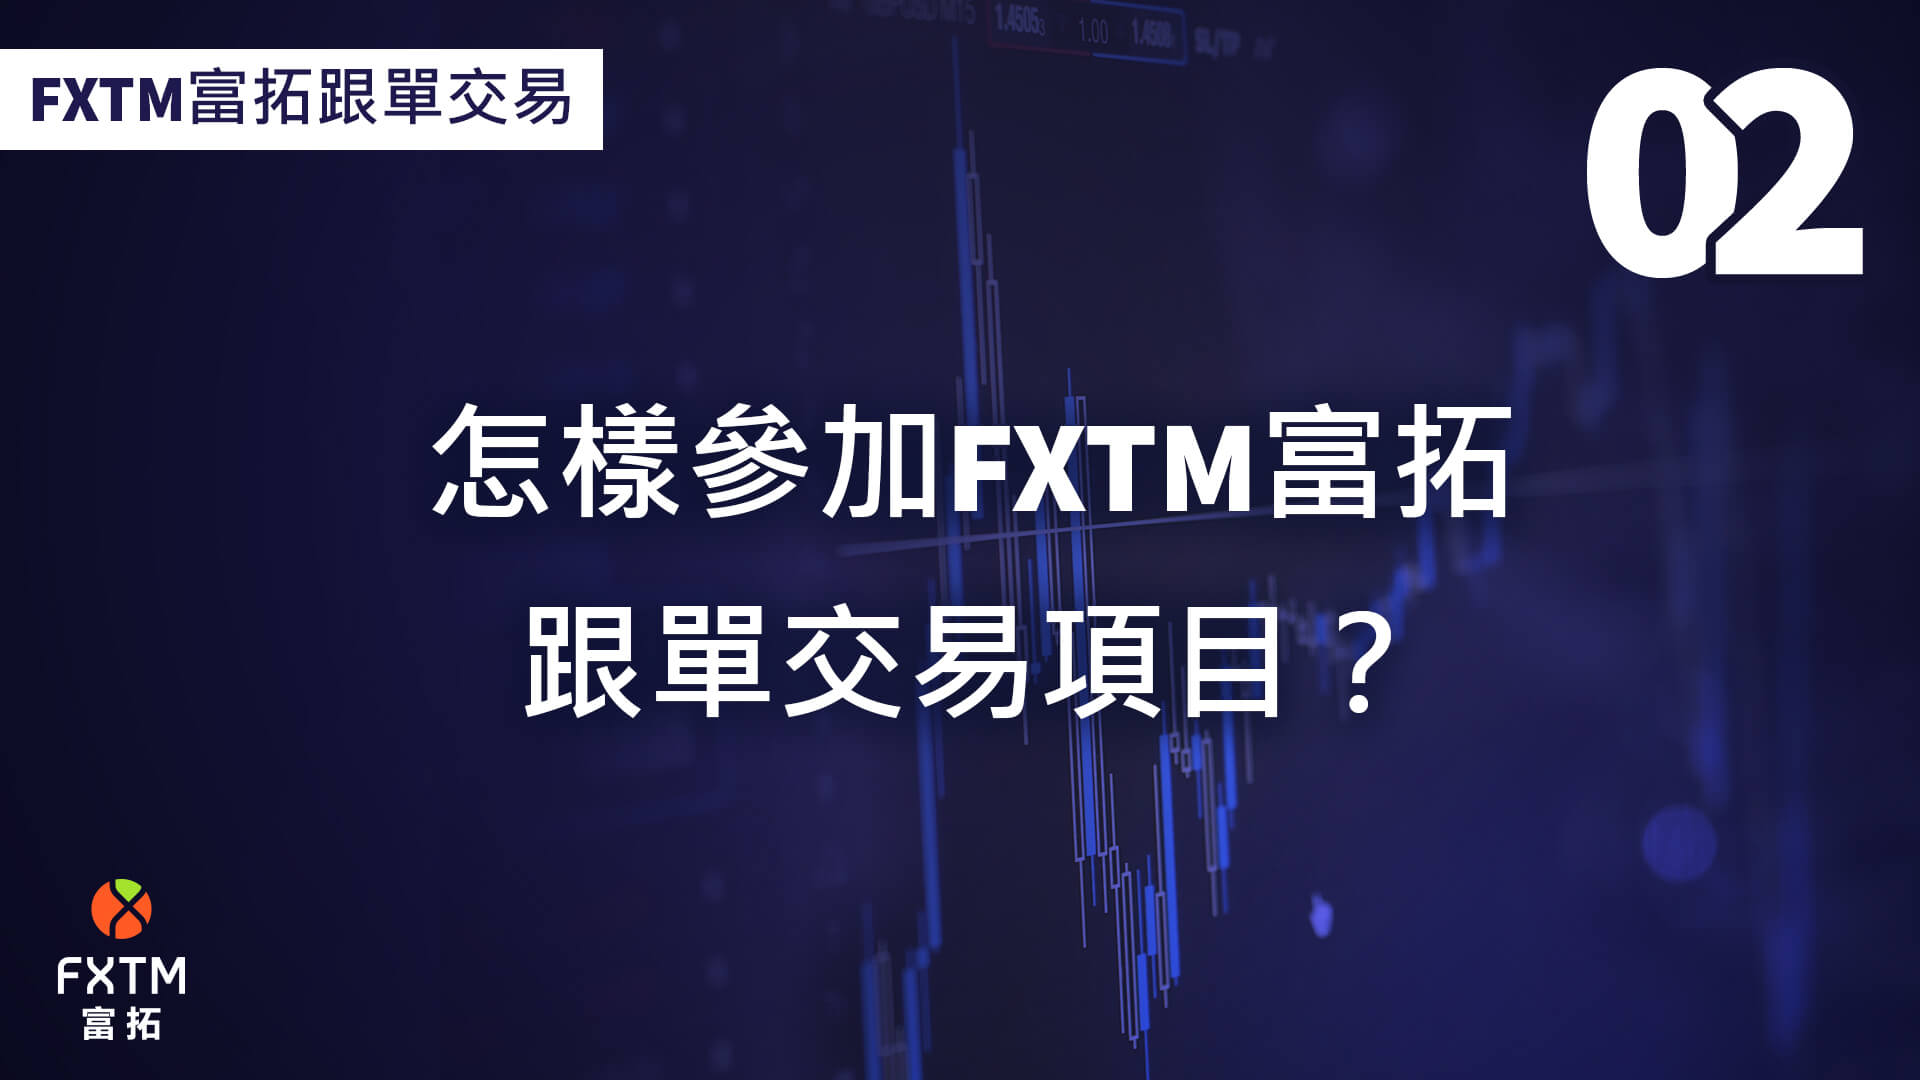 如何參加FXTM富拓跟單交易？ 